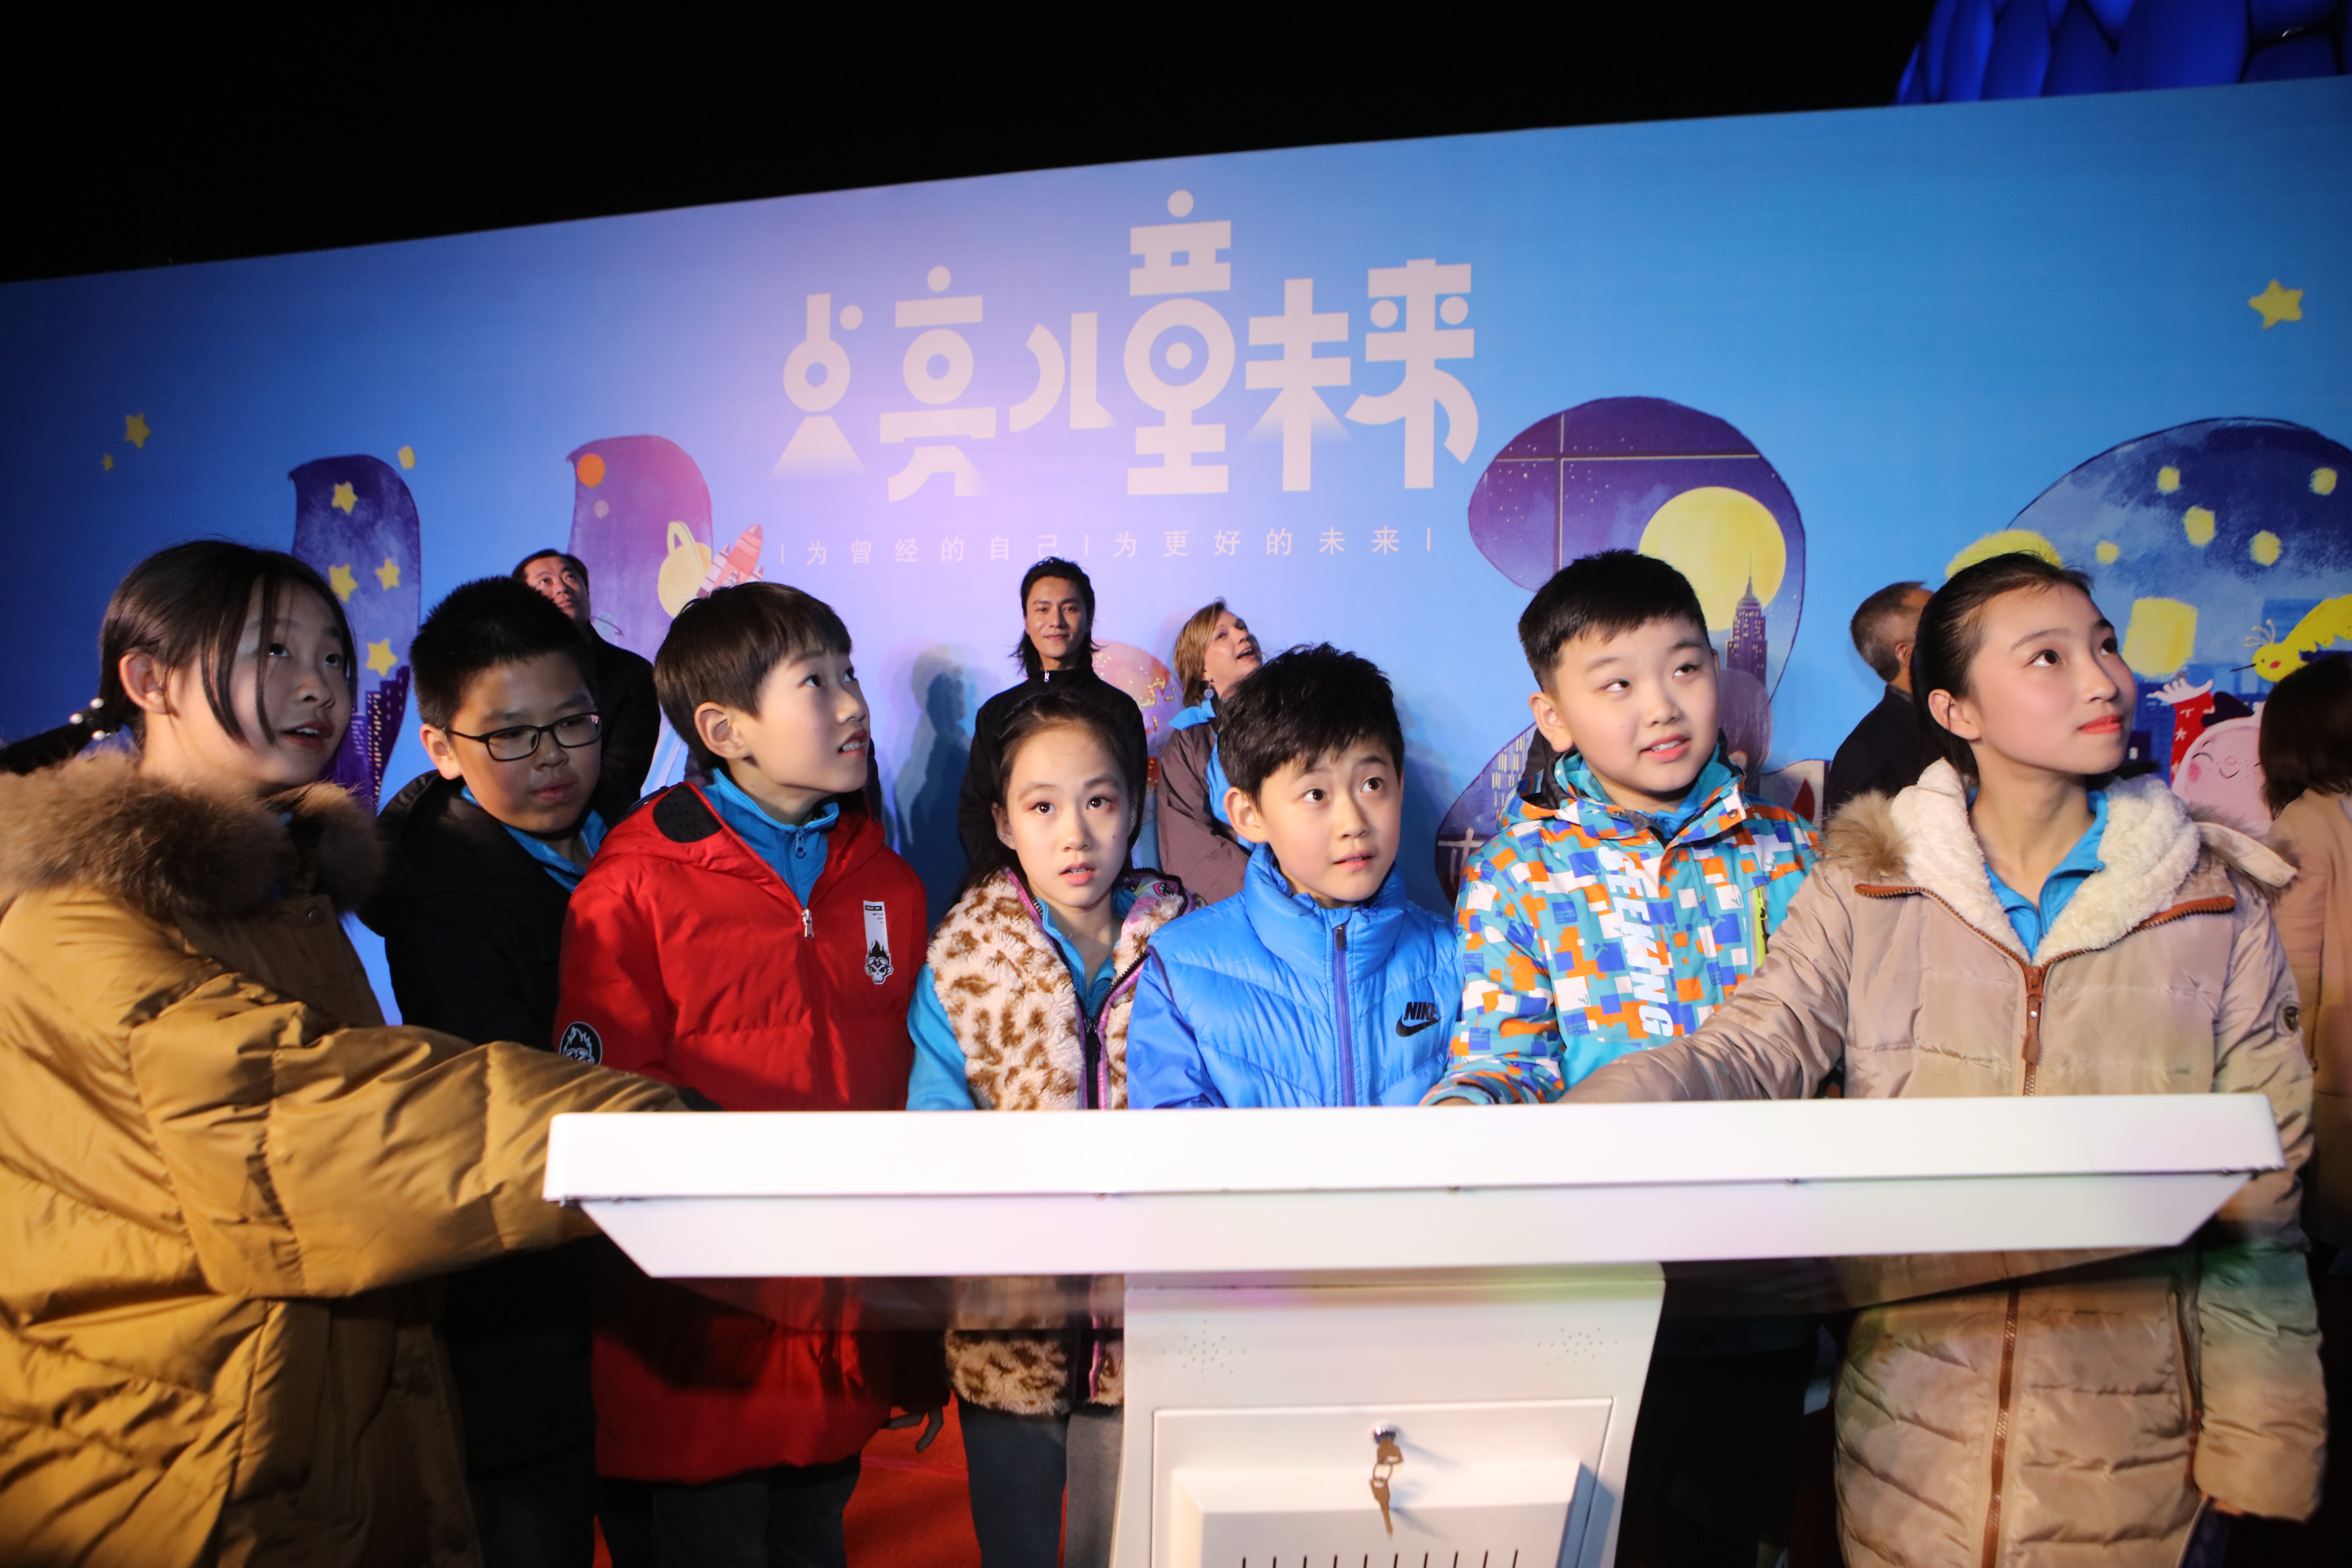 2018年11月20日，儿童触动触屏，以象征儿童友好的蓝色点亮了国家游泳中心（“水立方”）的外墙，以此庆祝世界儿童日。